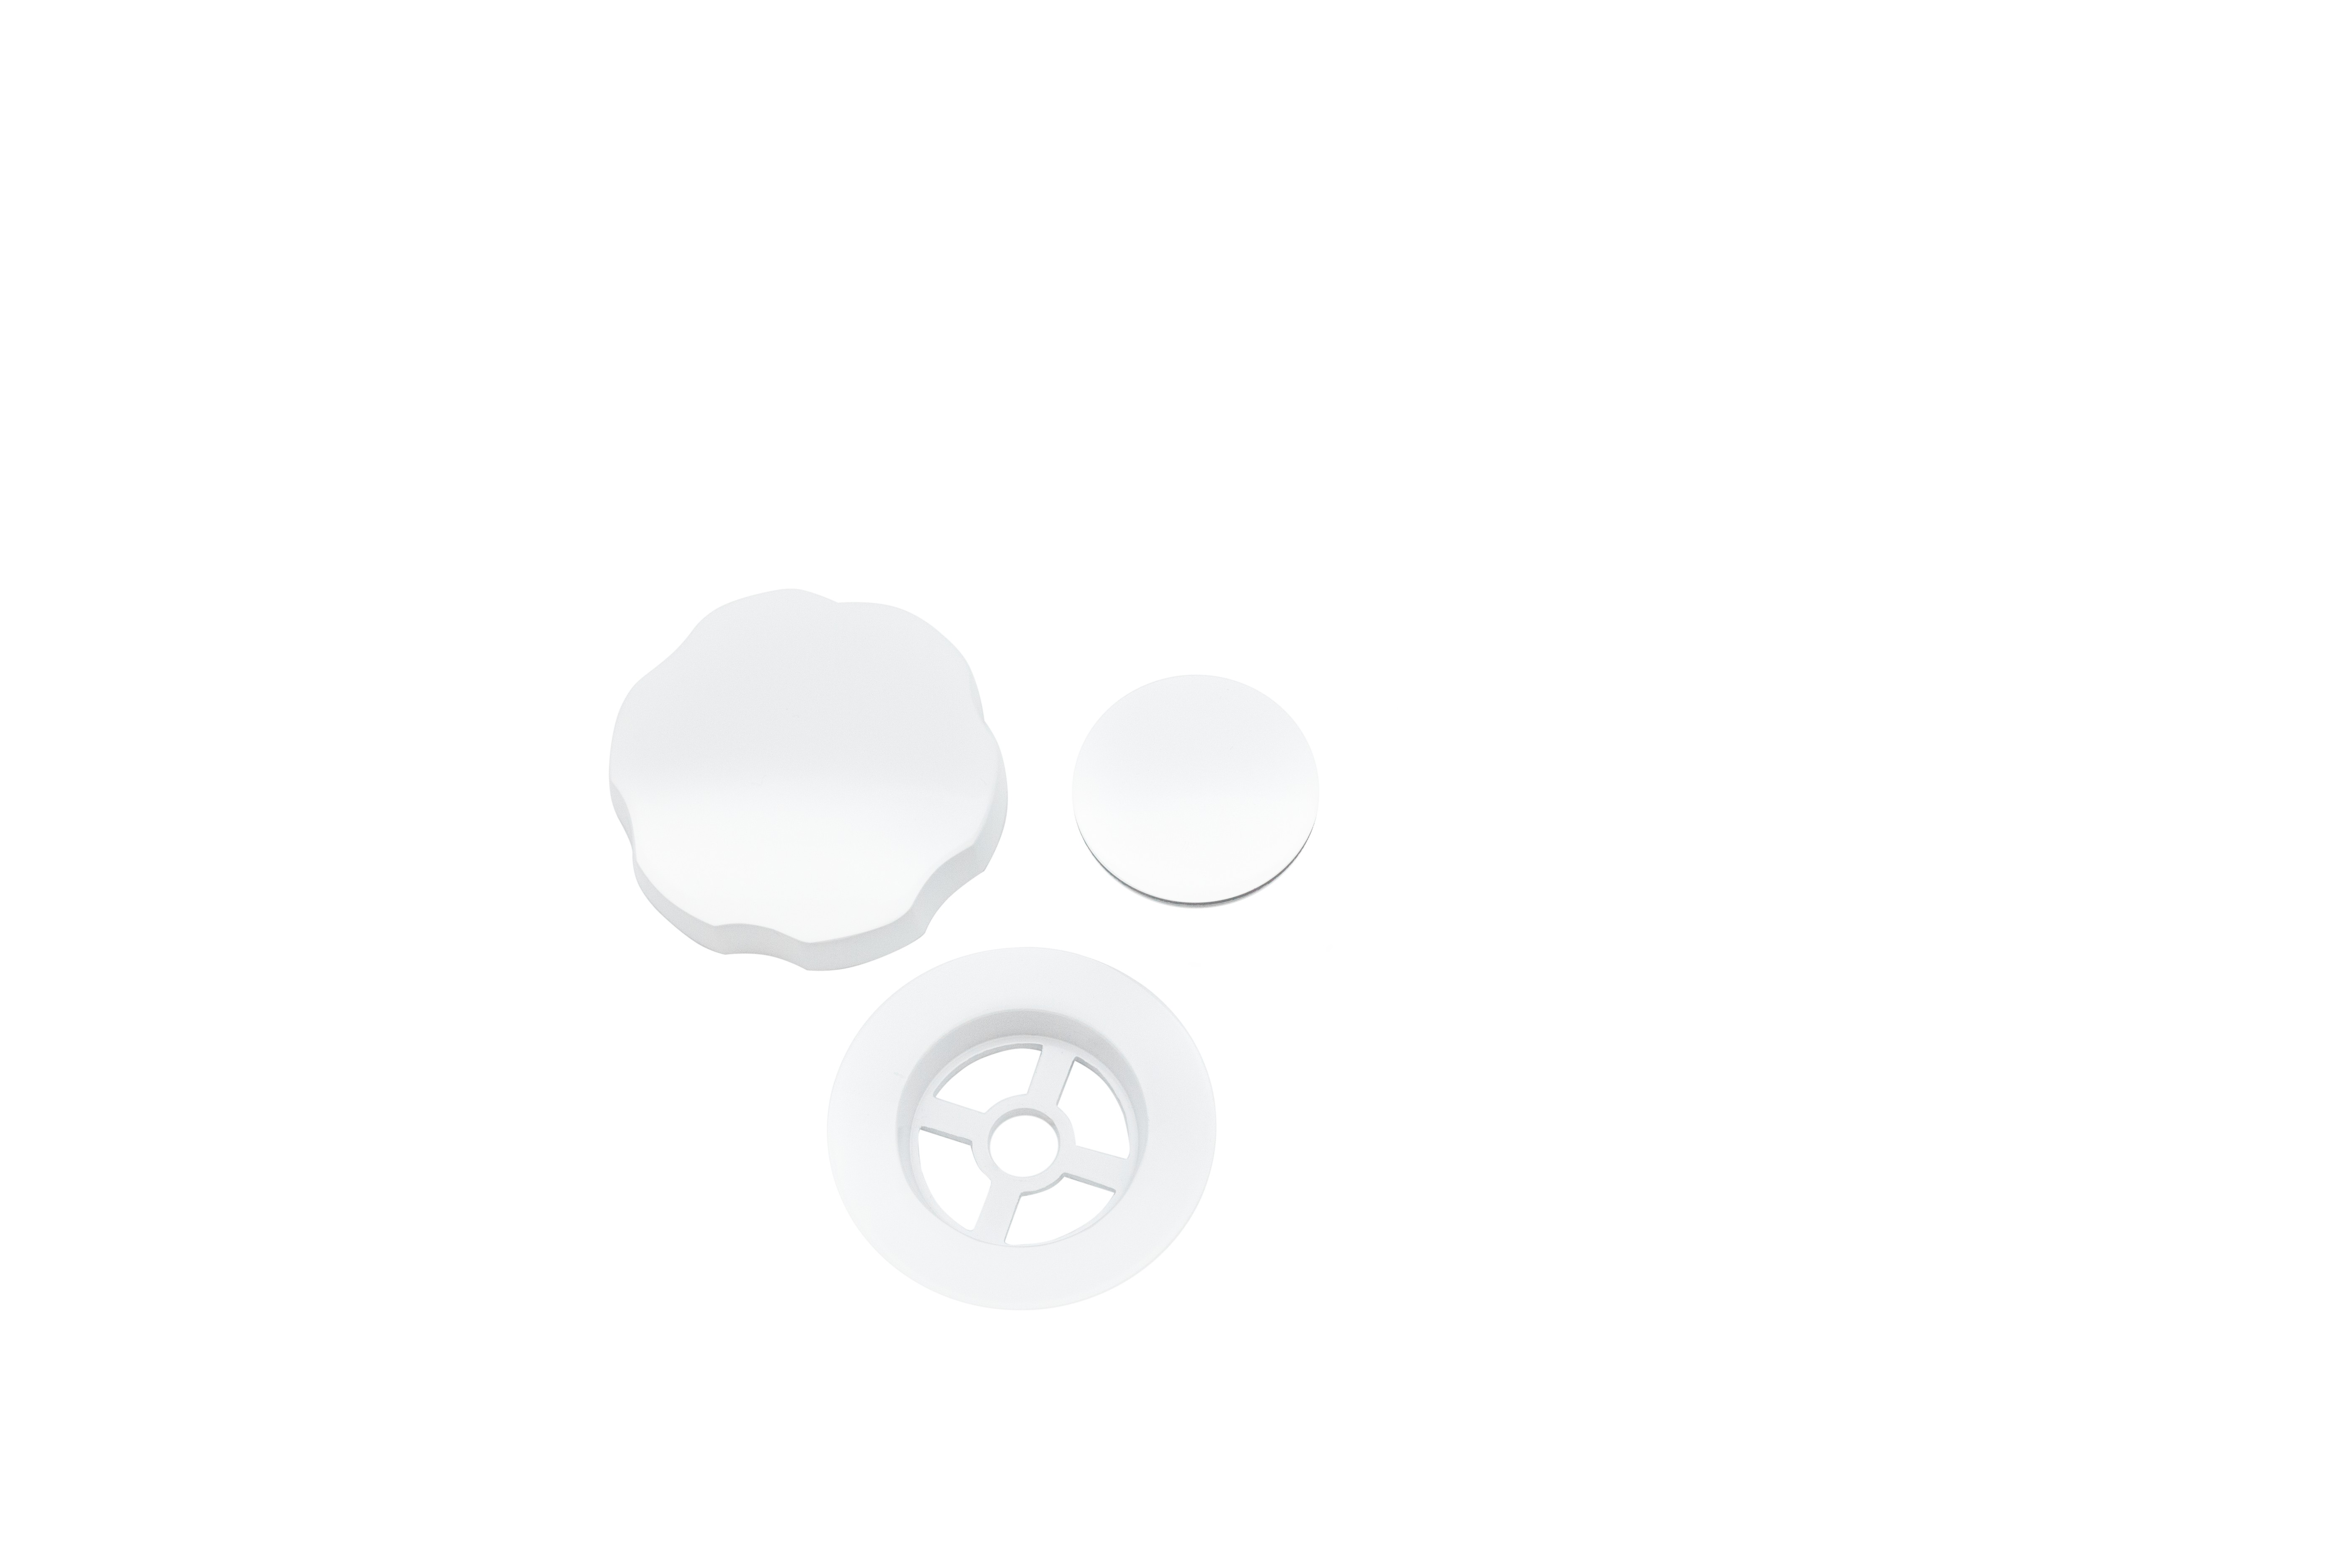 Сифон для ванны ALPEN ALP55-RU60 white glossy